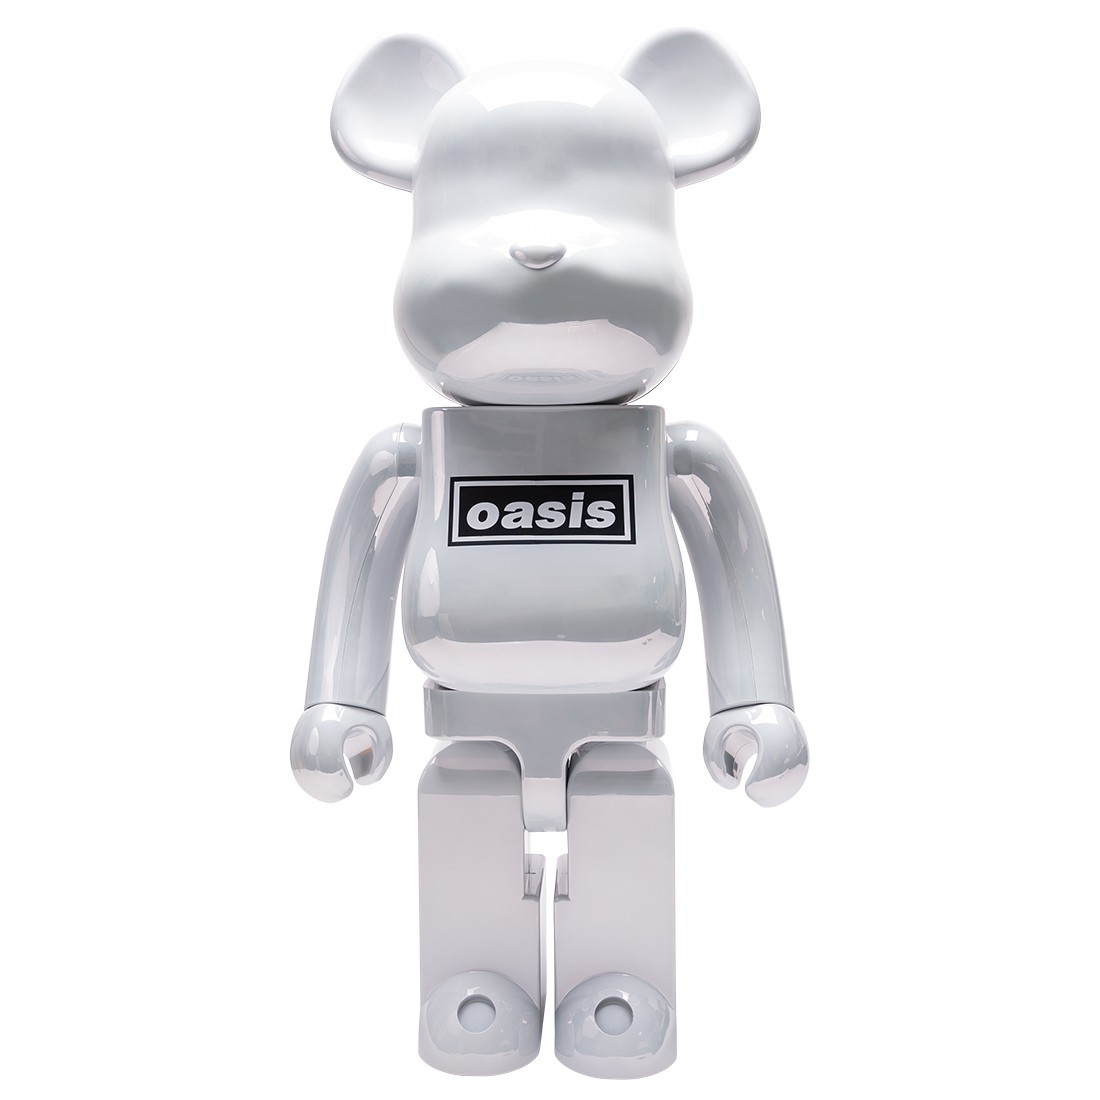 Medicom Oasis Merchandising White Chrome 1000% Bearbrick Figure (white)